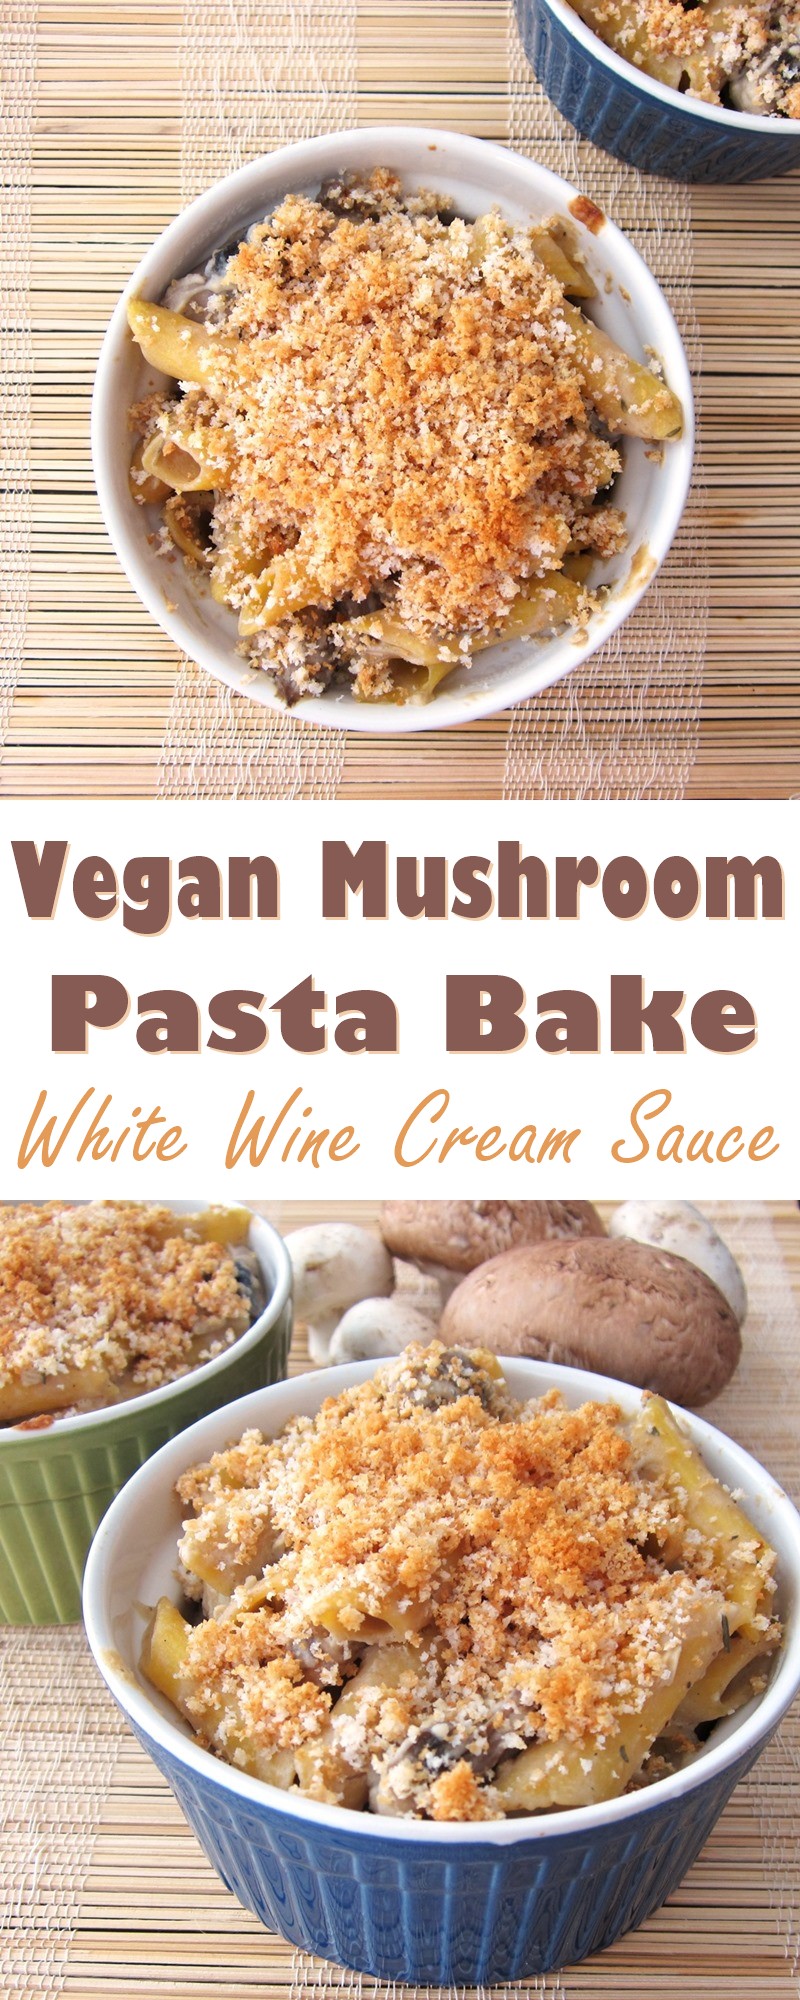 Vegan Mushroom Pasta Bake Recipe with Dairy-Free White Wine Cream Sauce